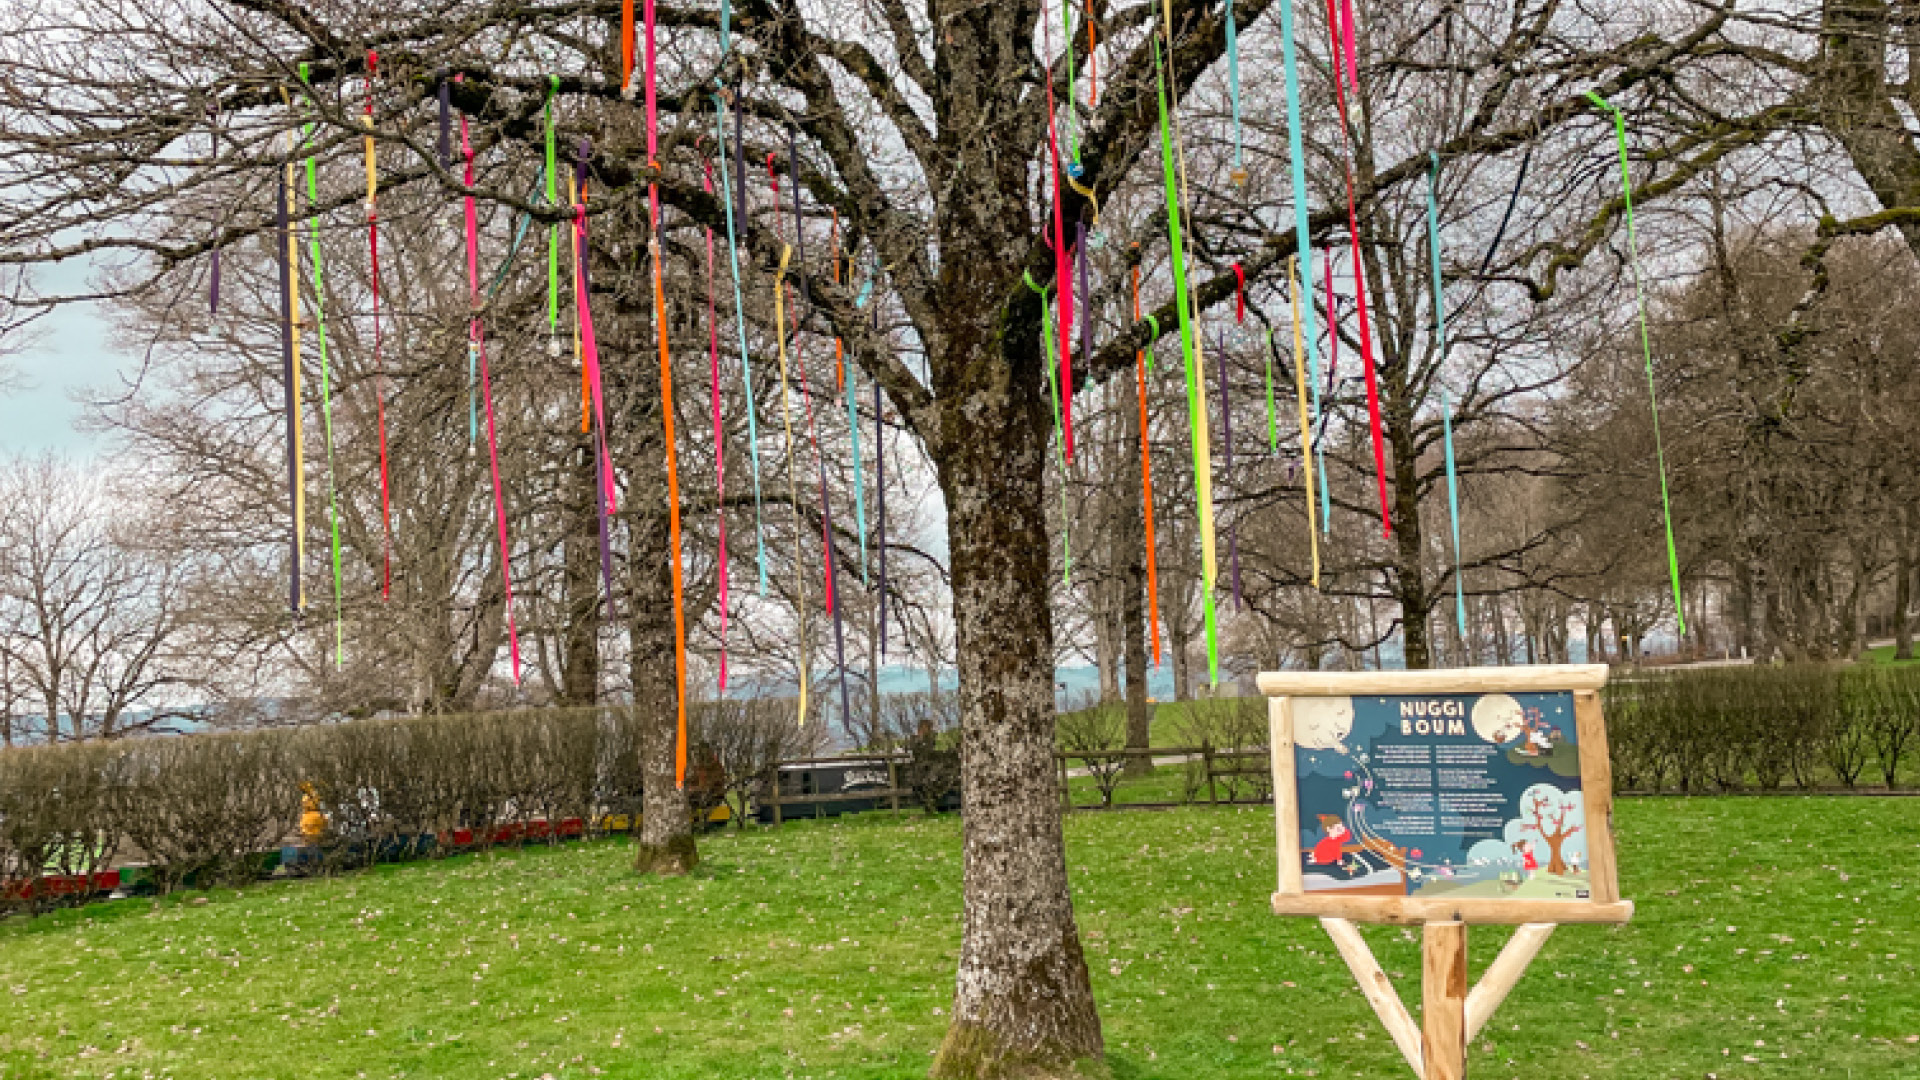 L'arbre nouvellement inauguré avec des rubans de coton colorés au milieu du parc.